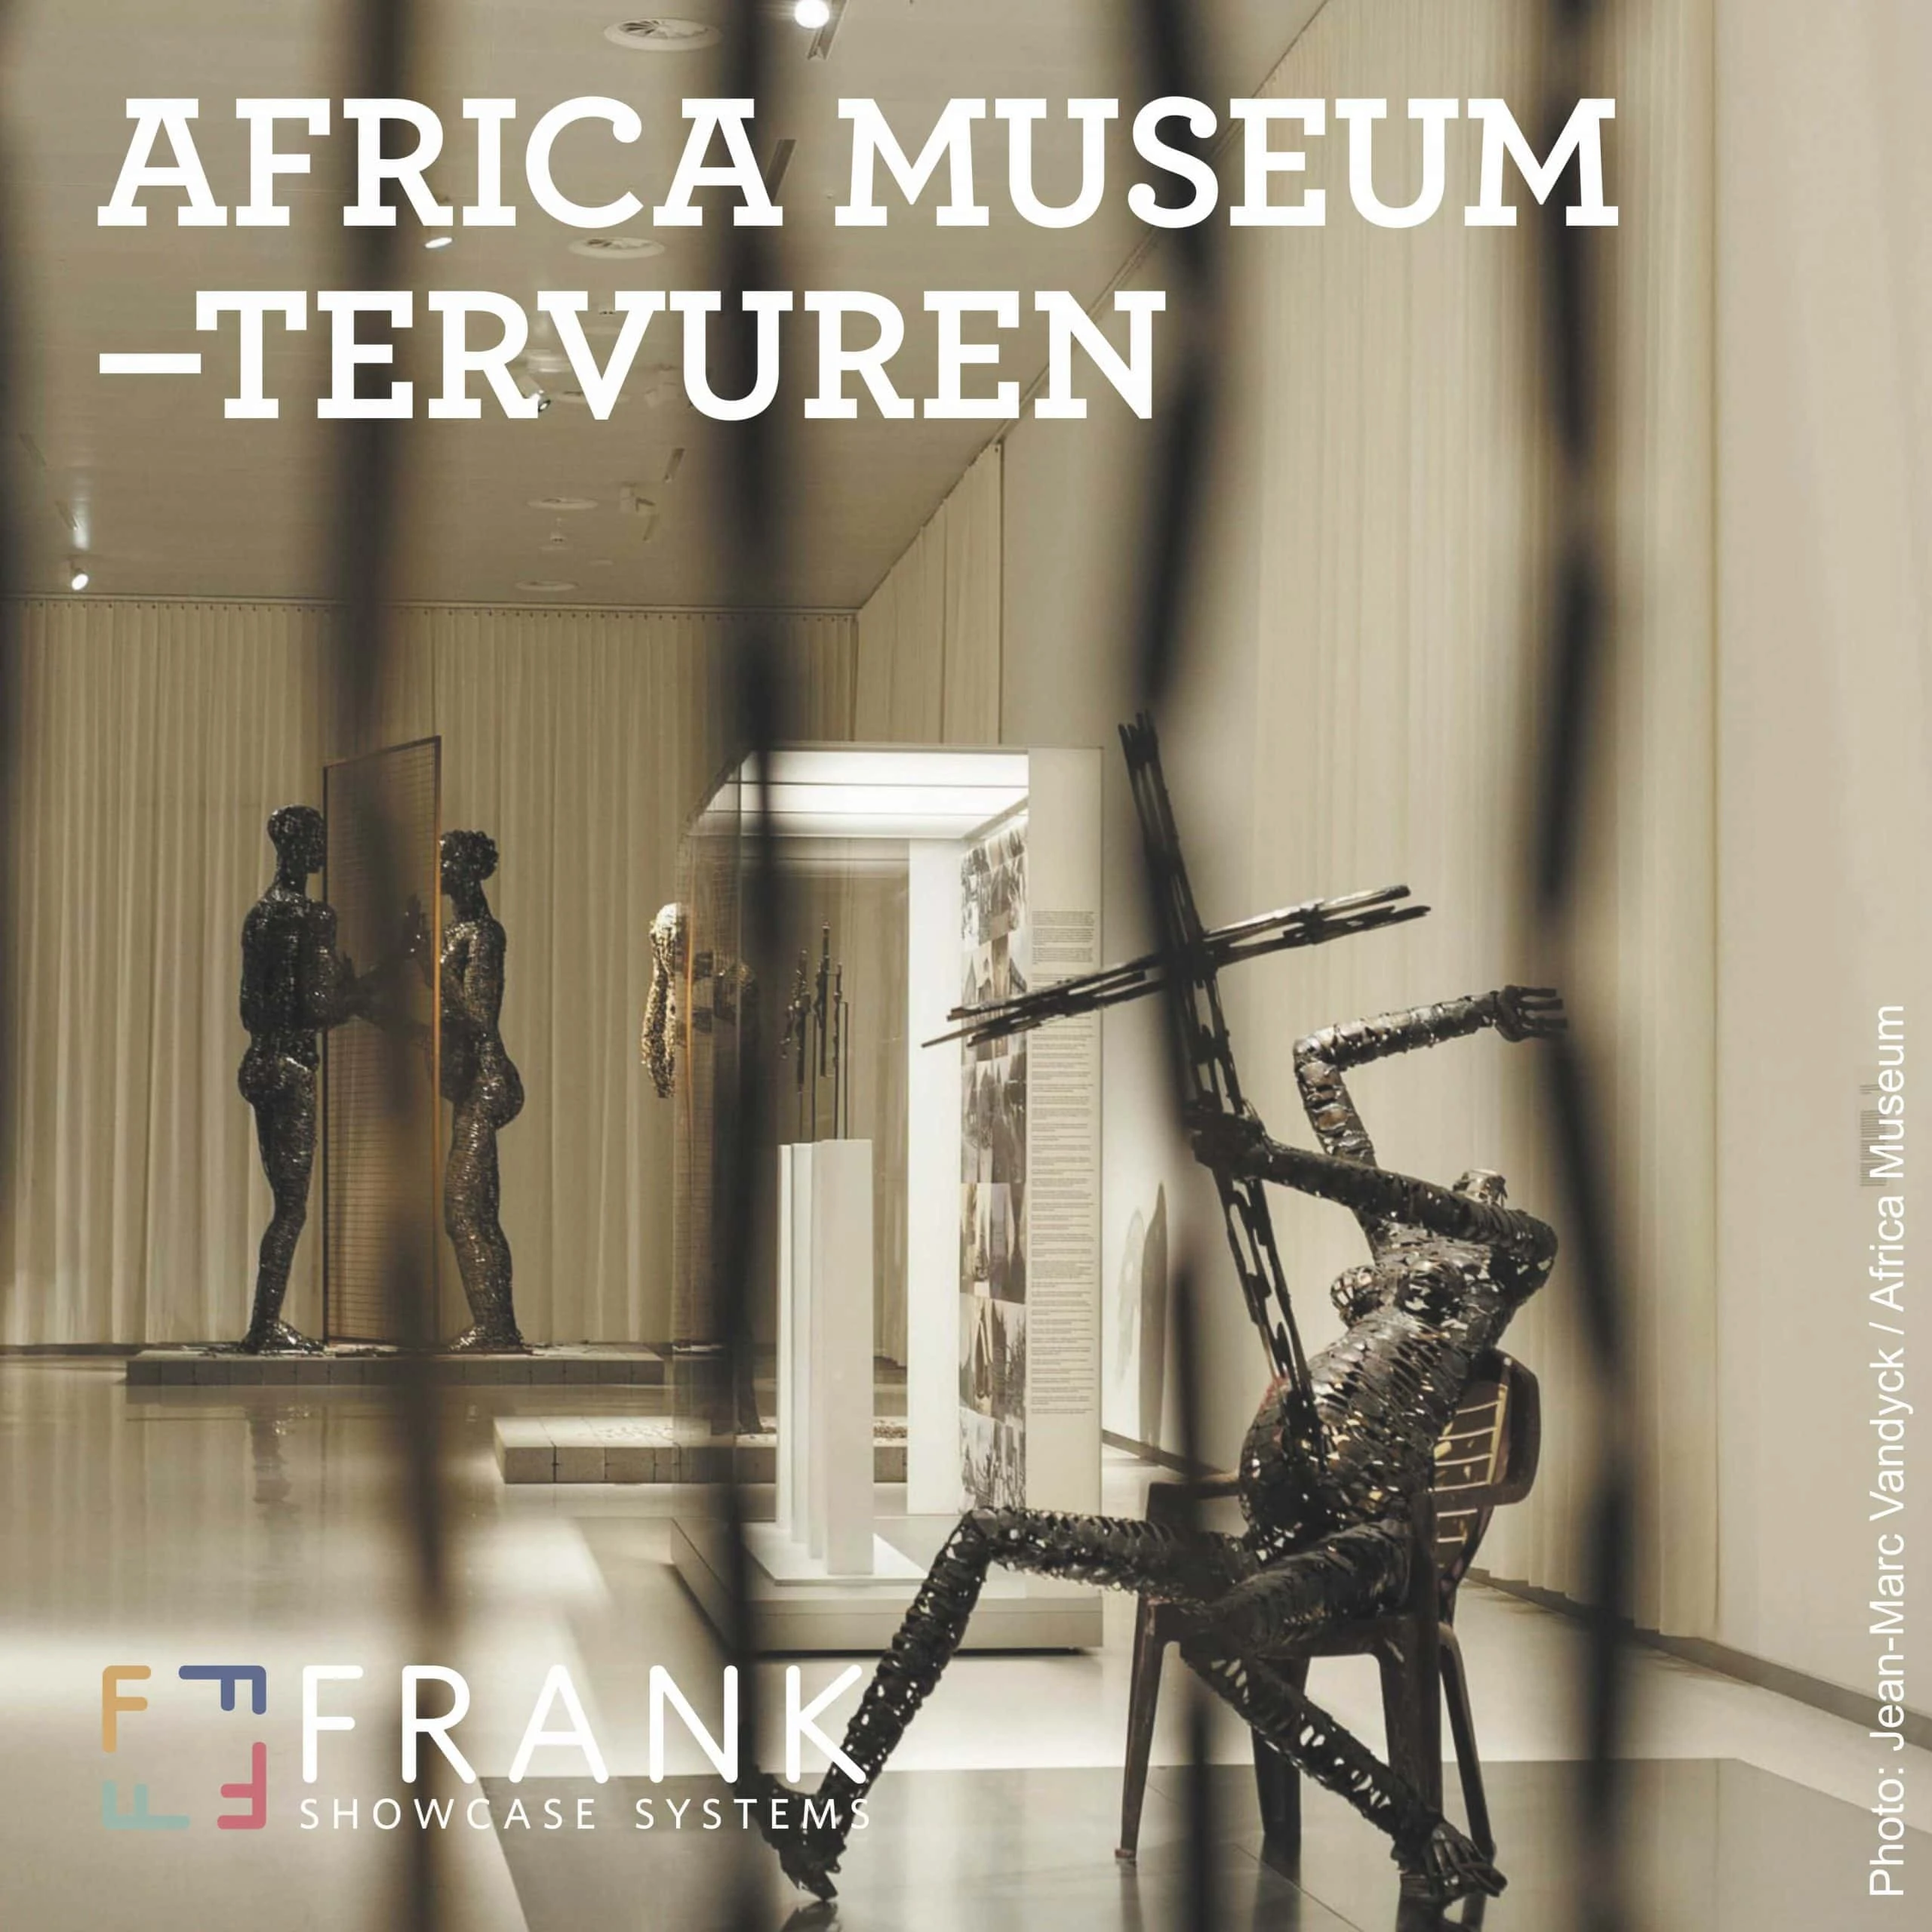 Africa museum showcases